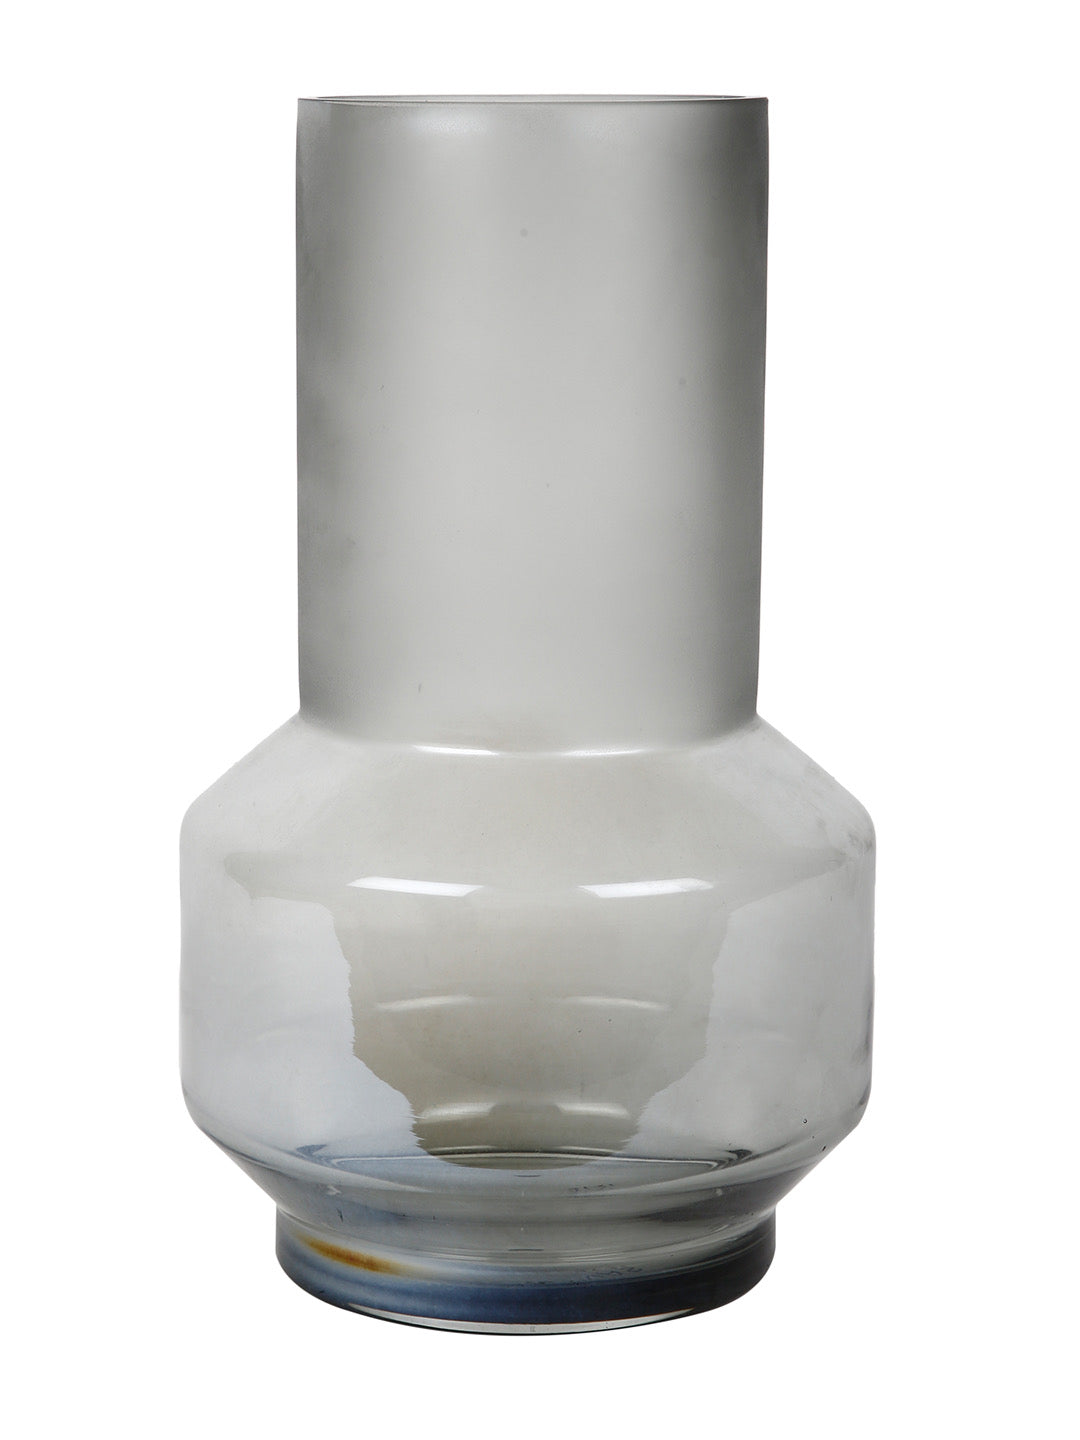 Black Glass Bud-Stem Vase - Default Title (VAS22021)